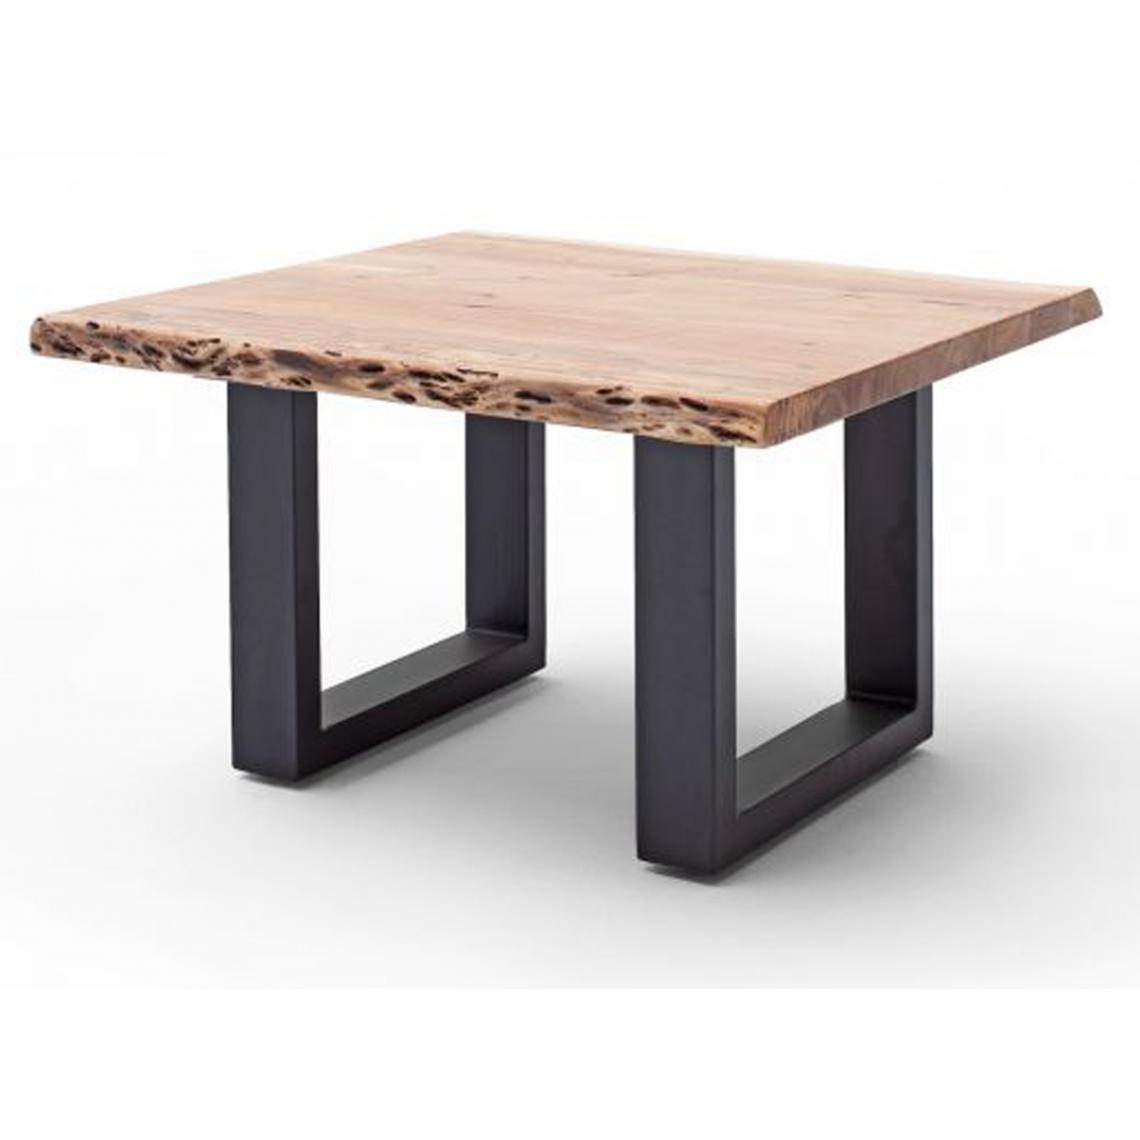 Pegane - Table basse en bois d'acacia massif naturel et acier anthracite - L.75 x H.45 x P.75 cm - Tables basses